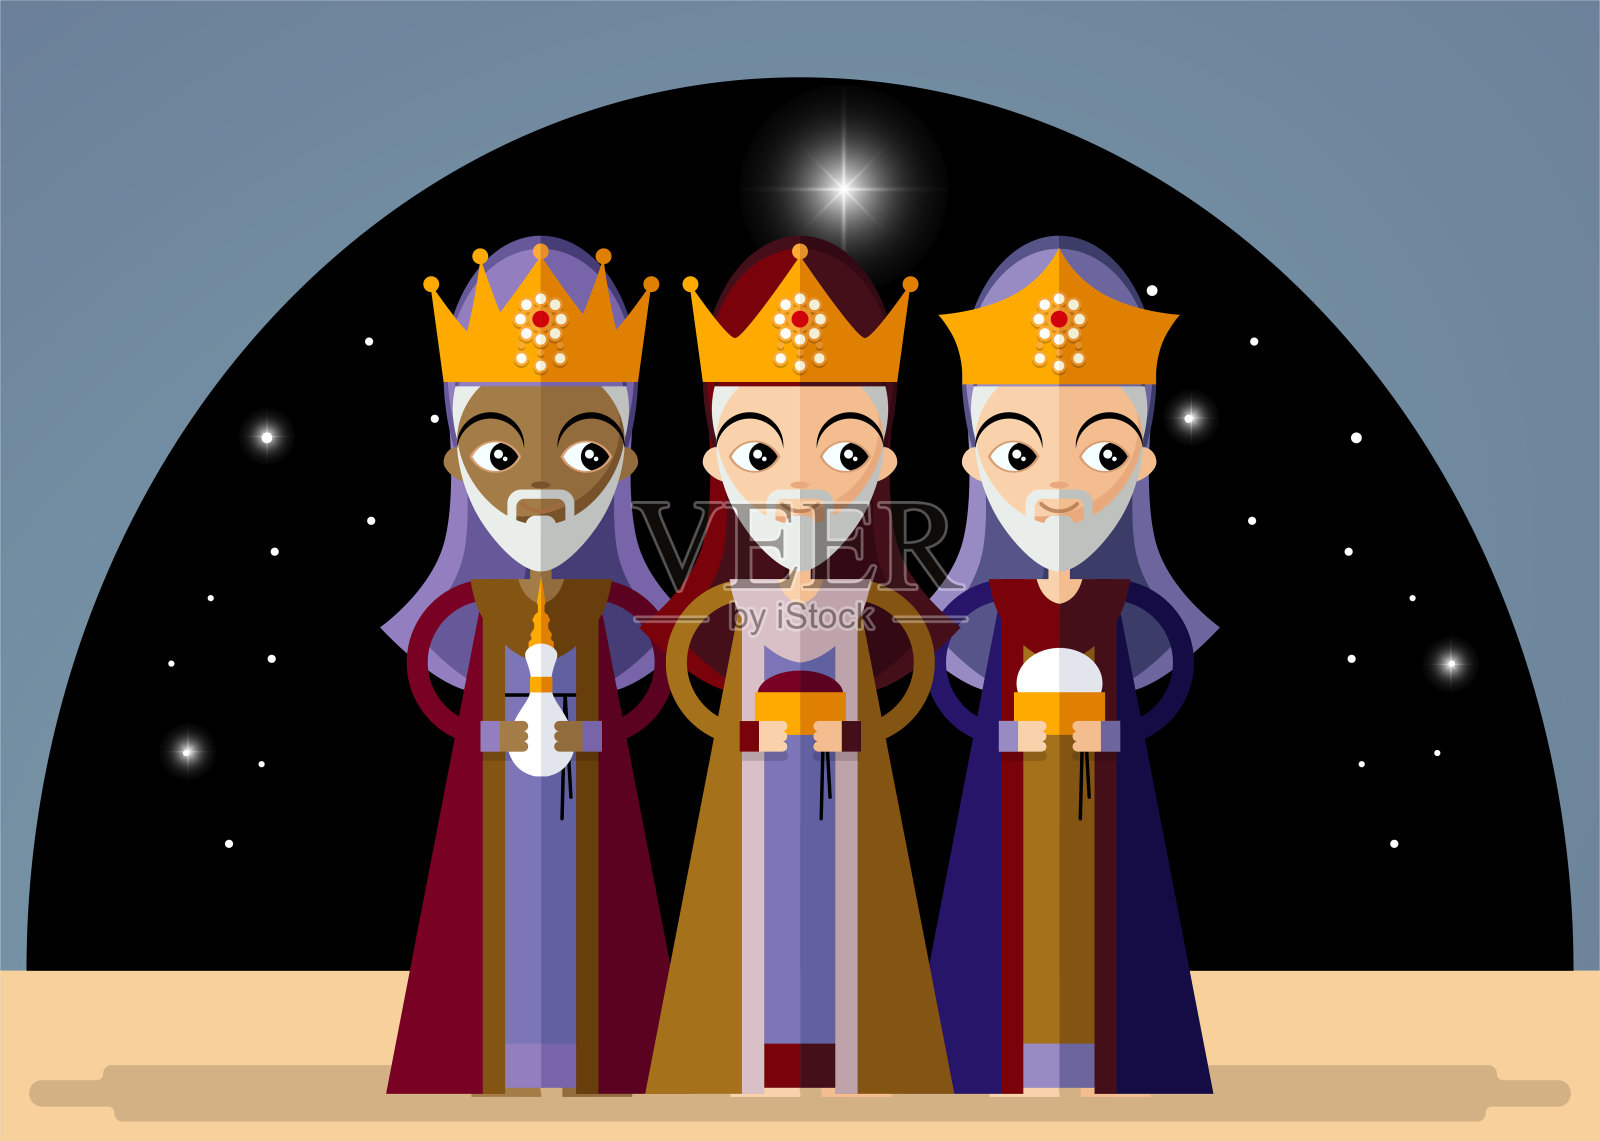 复古风格的圣诞卡，上面有三位国王给耶稣带来礼物。矢量插图在卡通风格。插画图片素材